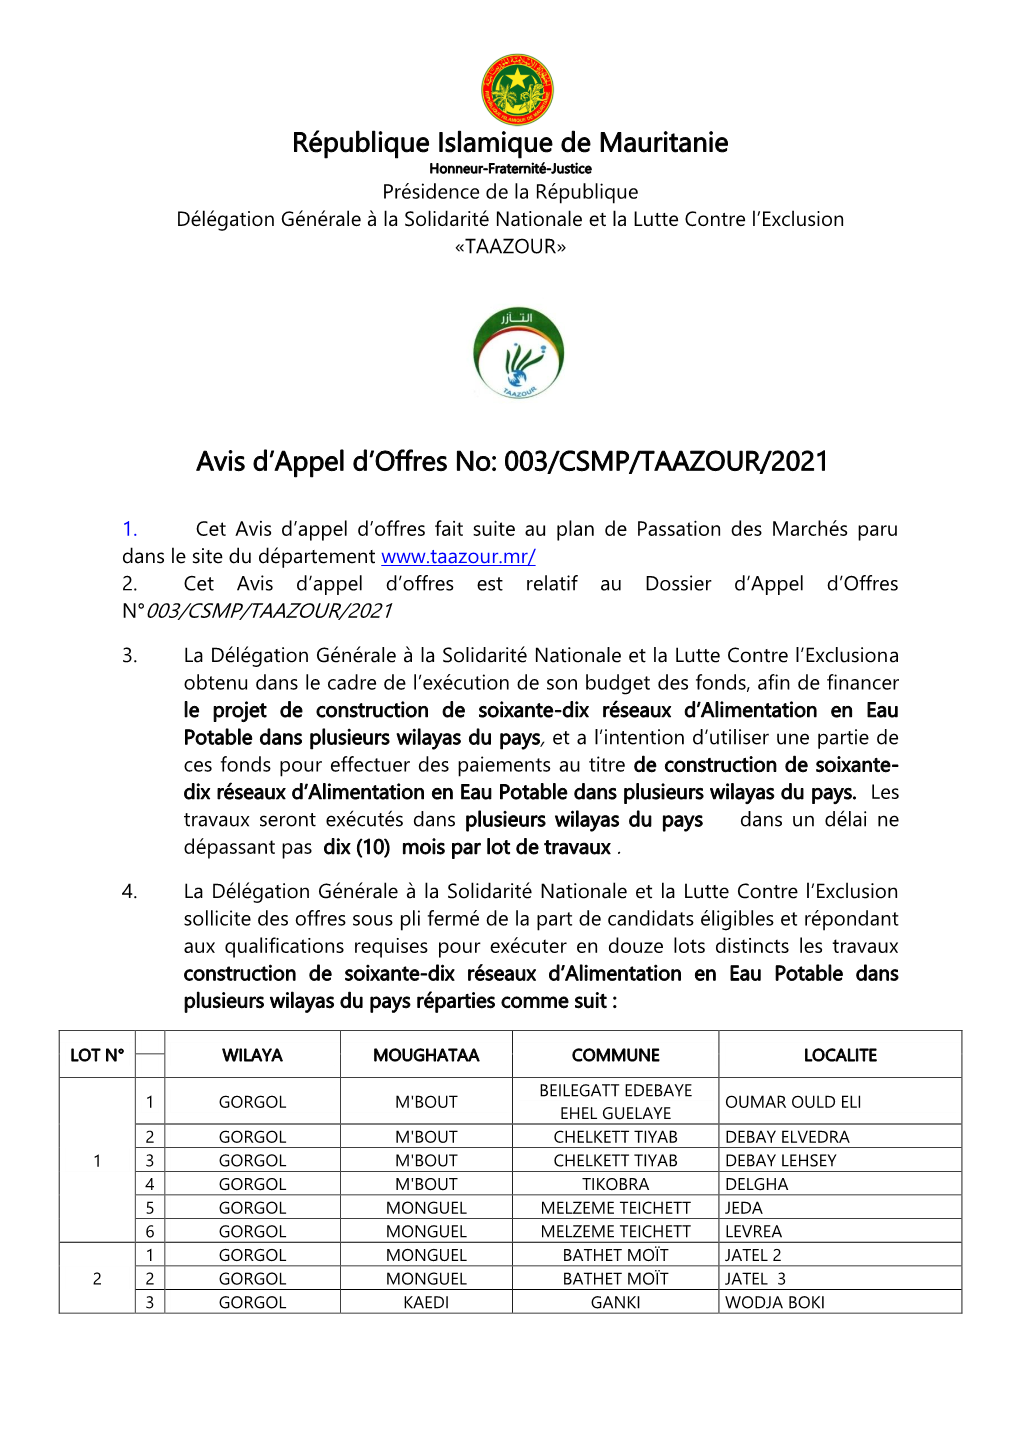 République Islamique De Mauritanie Avis D'appel D'offres No: 003/CSMP